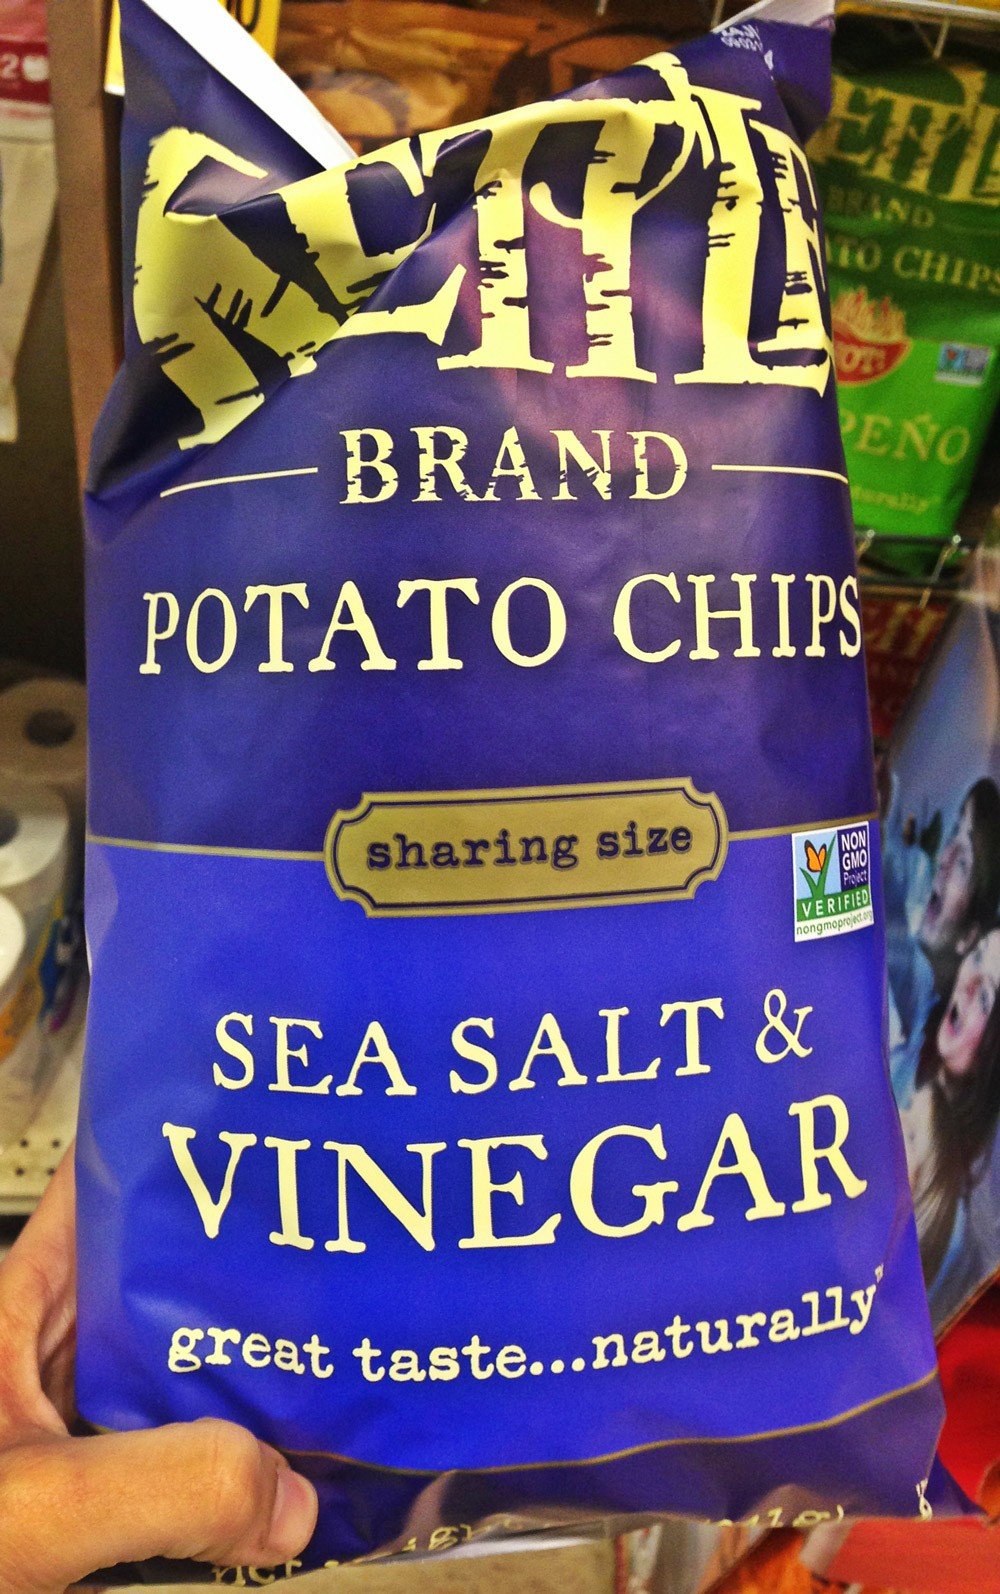 Kettle Brand Sea Salt & Vinegar Potato Chips